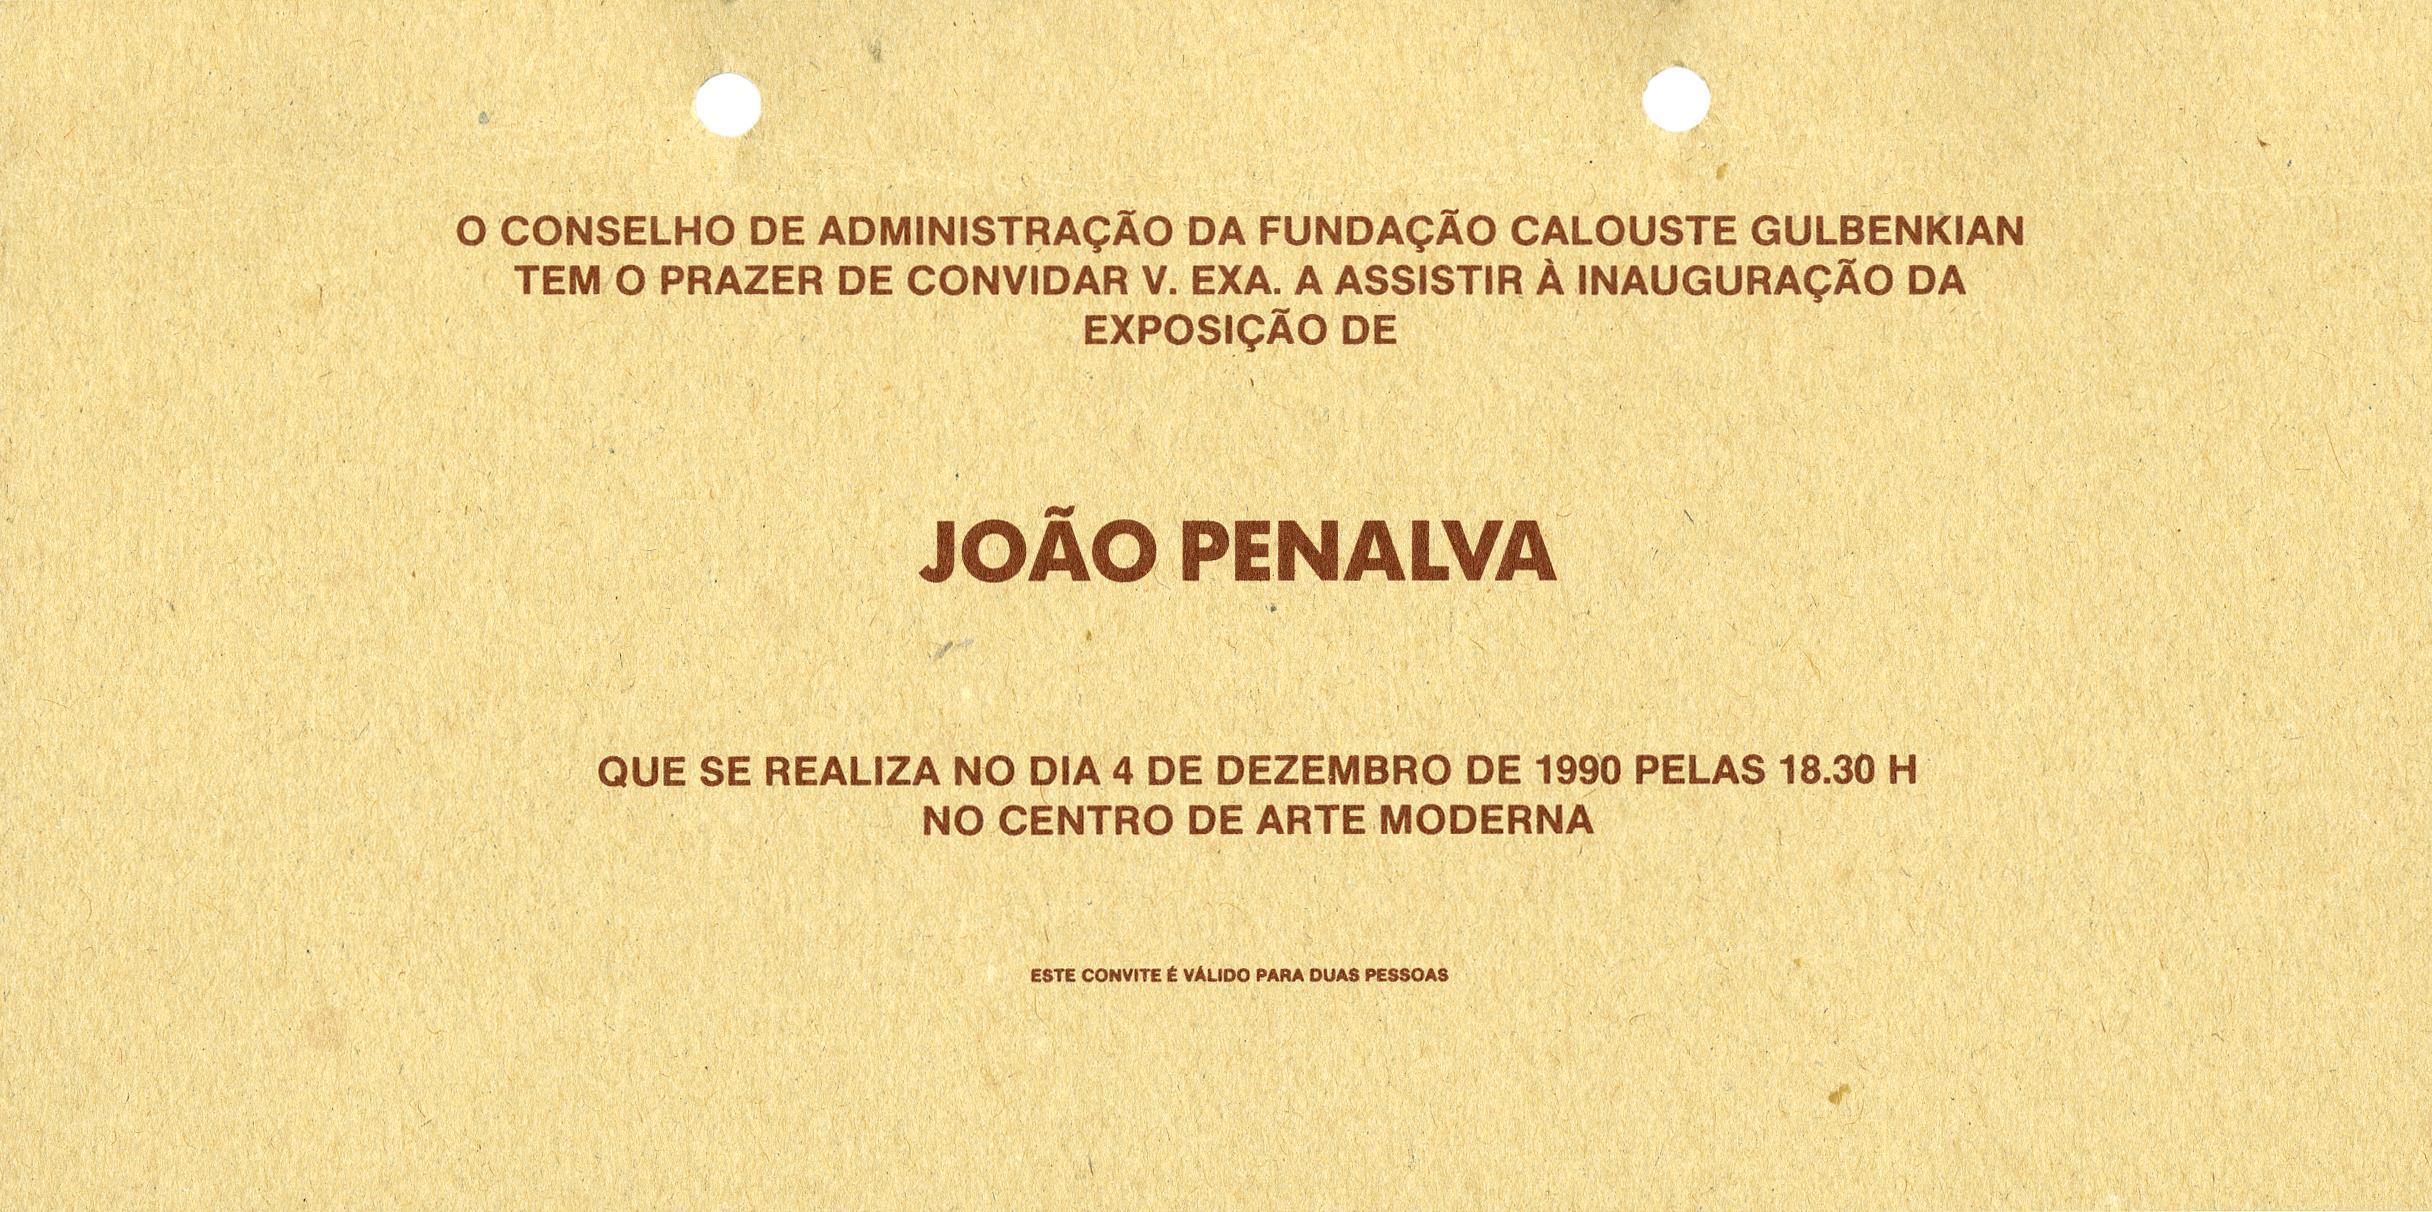 João Penalva